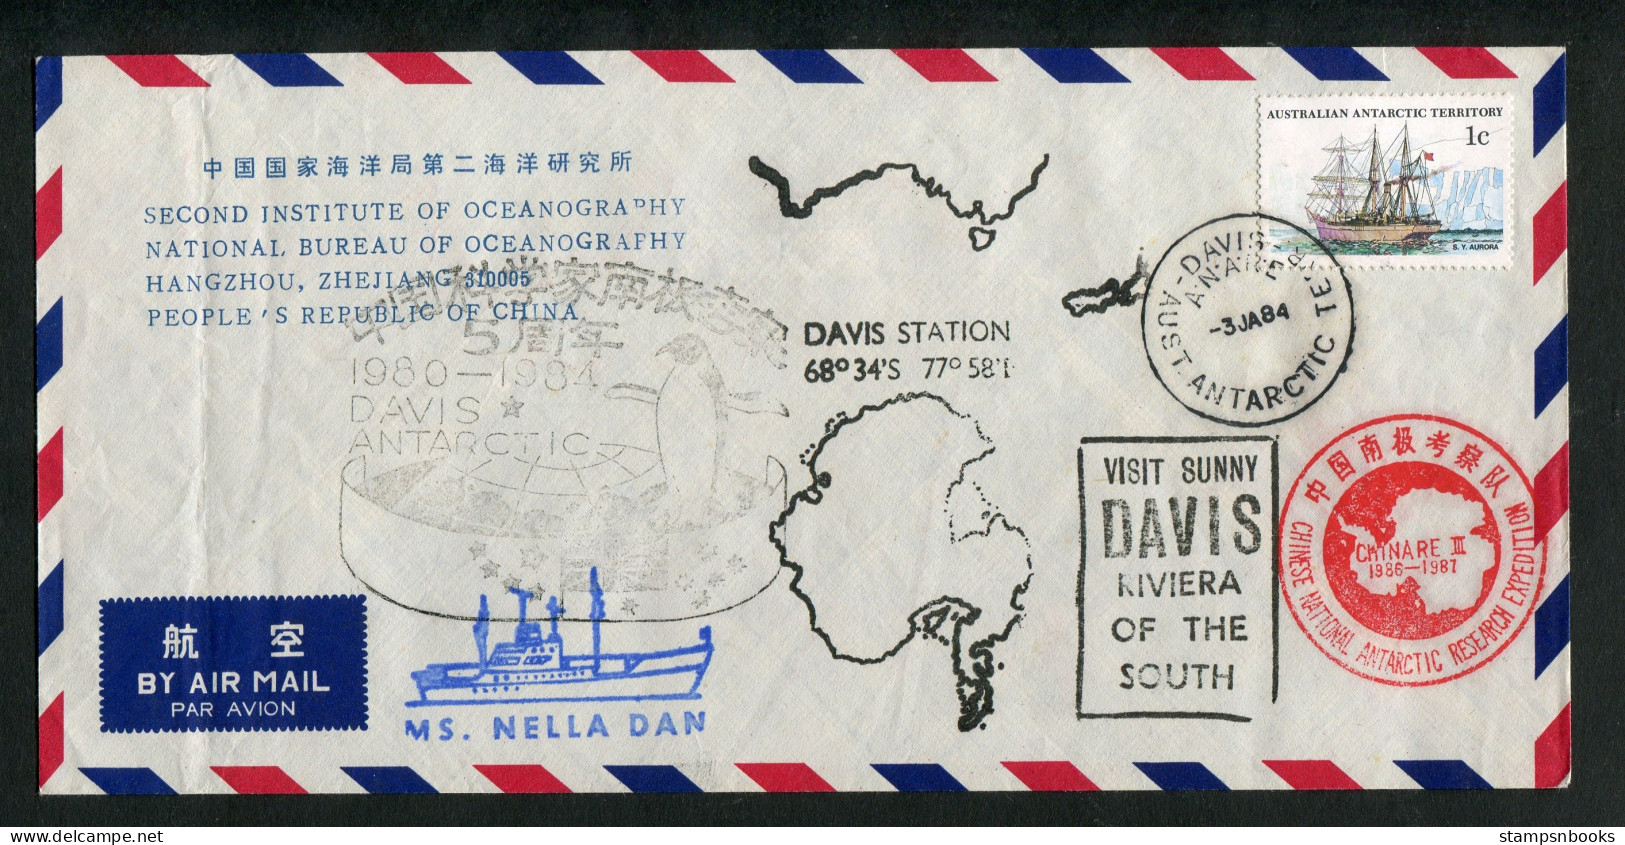 1984 A.A.T. China M.S. NELLA DAN Ship DAVIS Antarctica CHINARE Expedition Penguin Cover - Cartas & Documentos